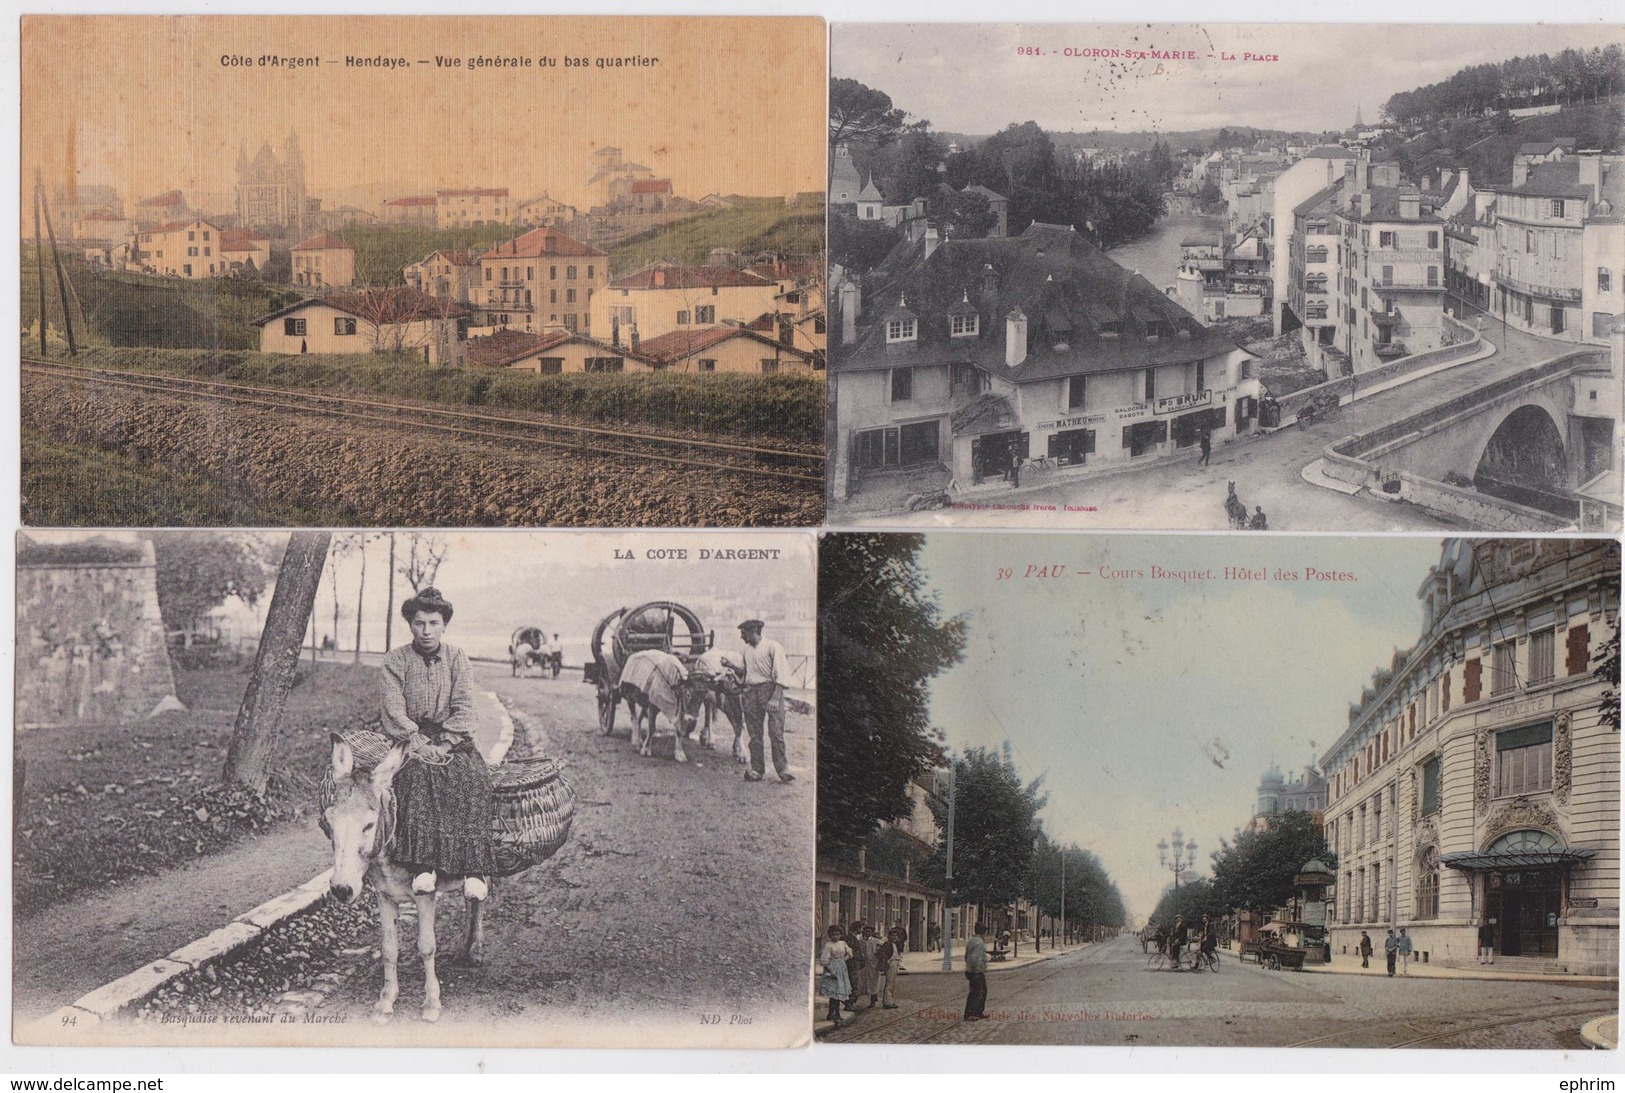 64 Pyrénées-Atlantiques - Lot de 151 cartes postales anciennes petit format